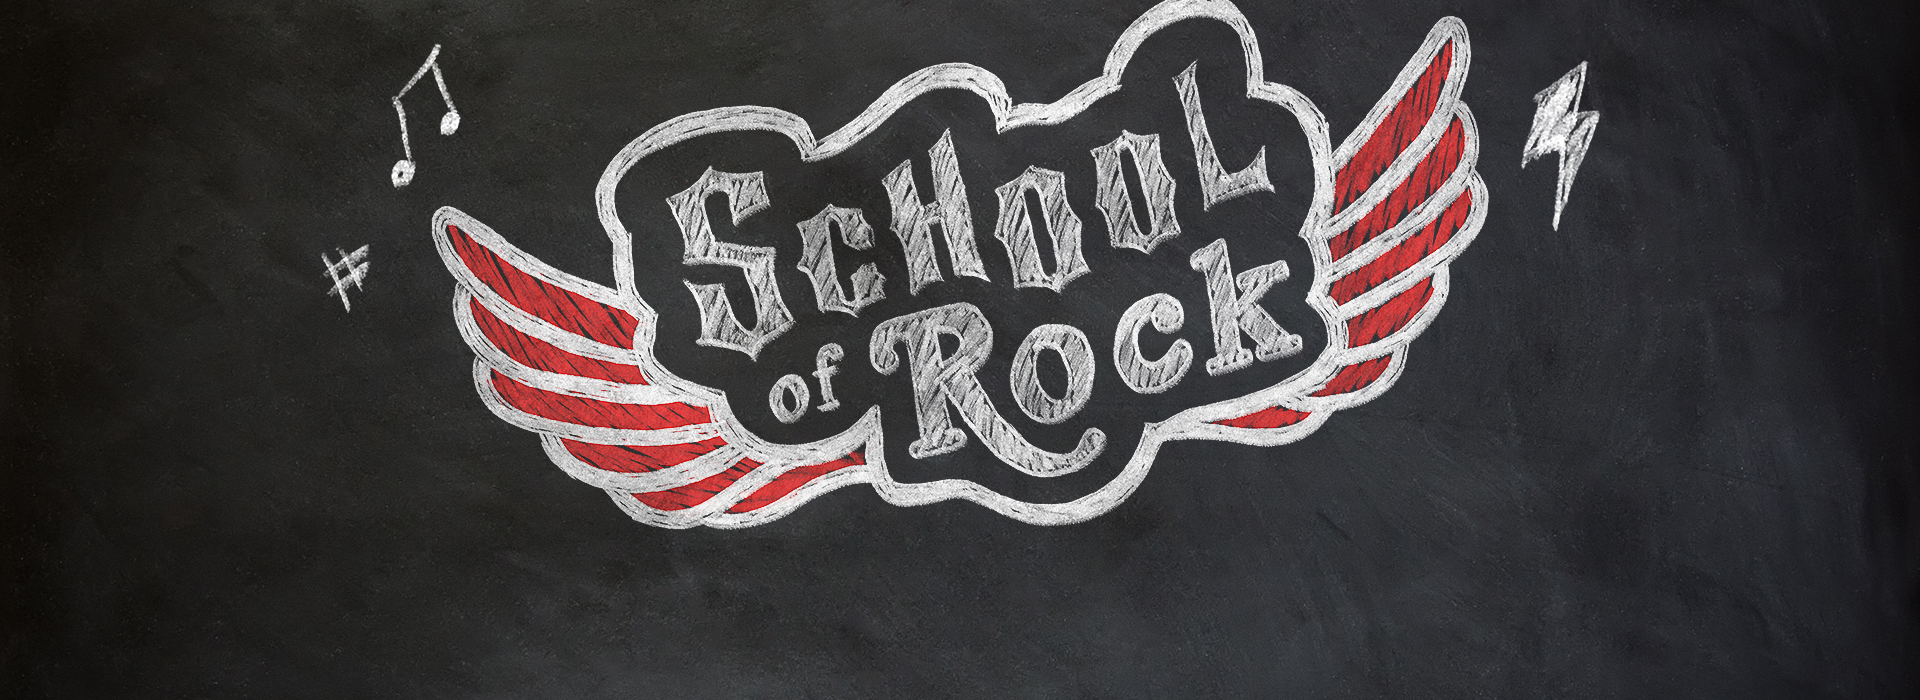 School of Rock_Web Banner